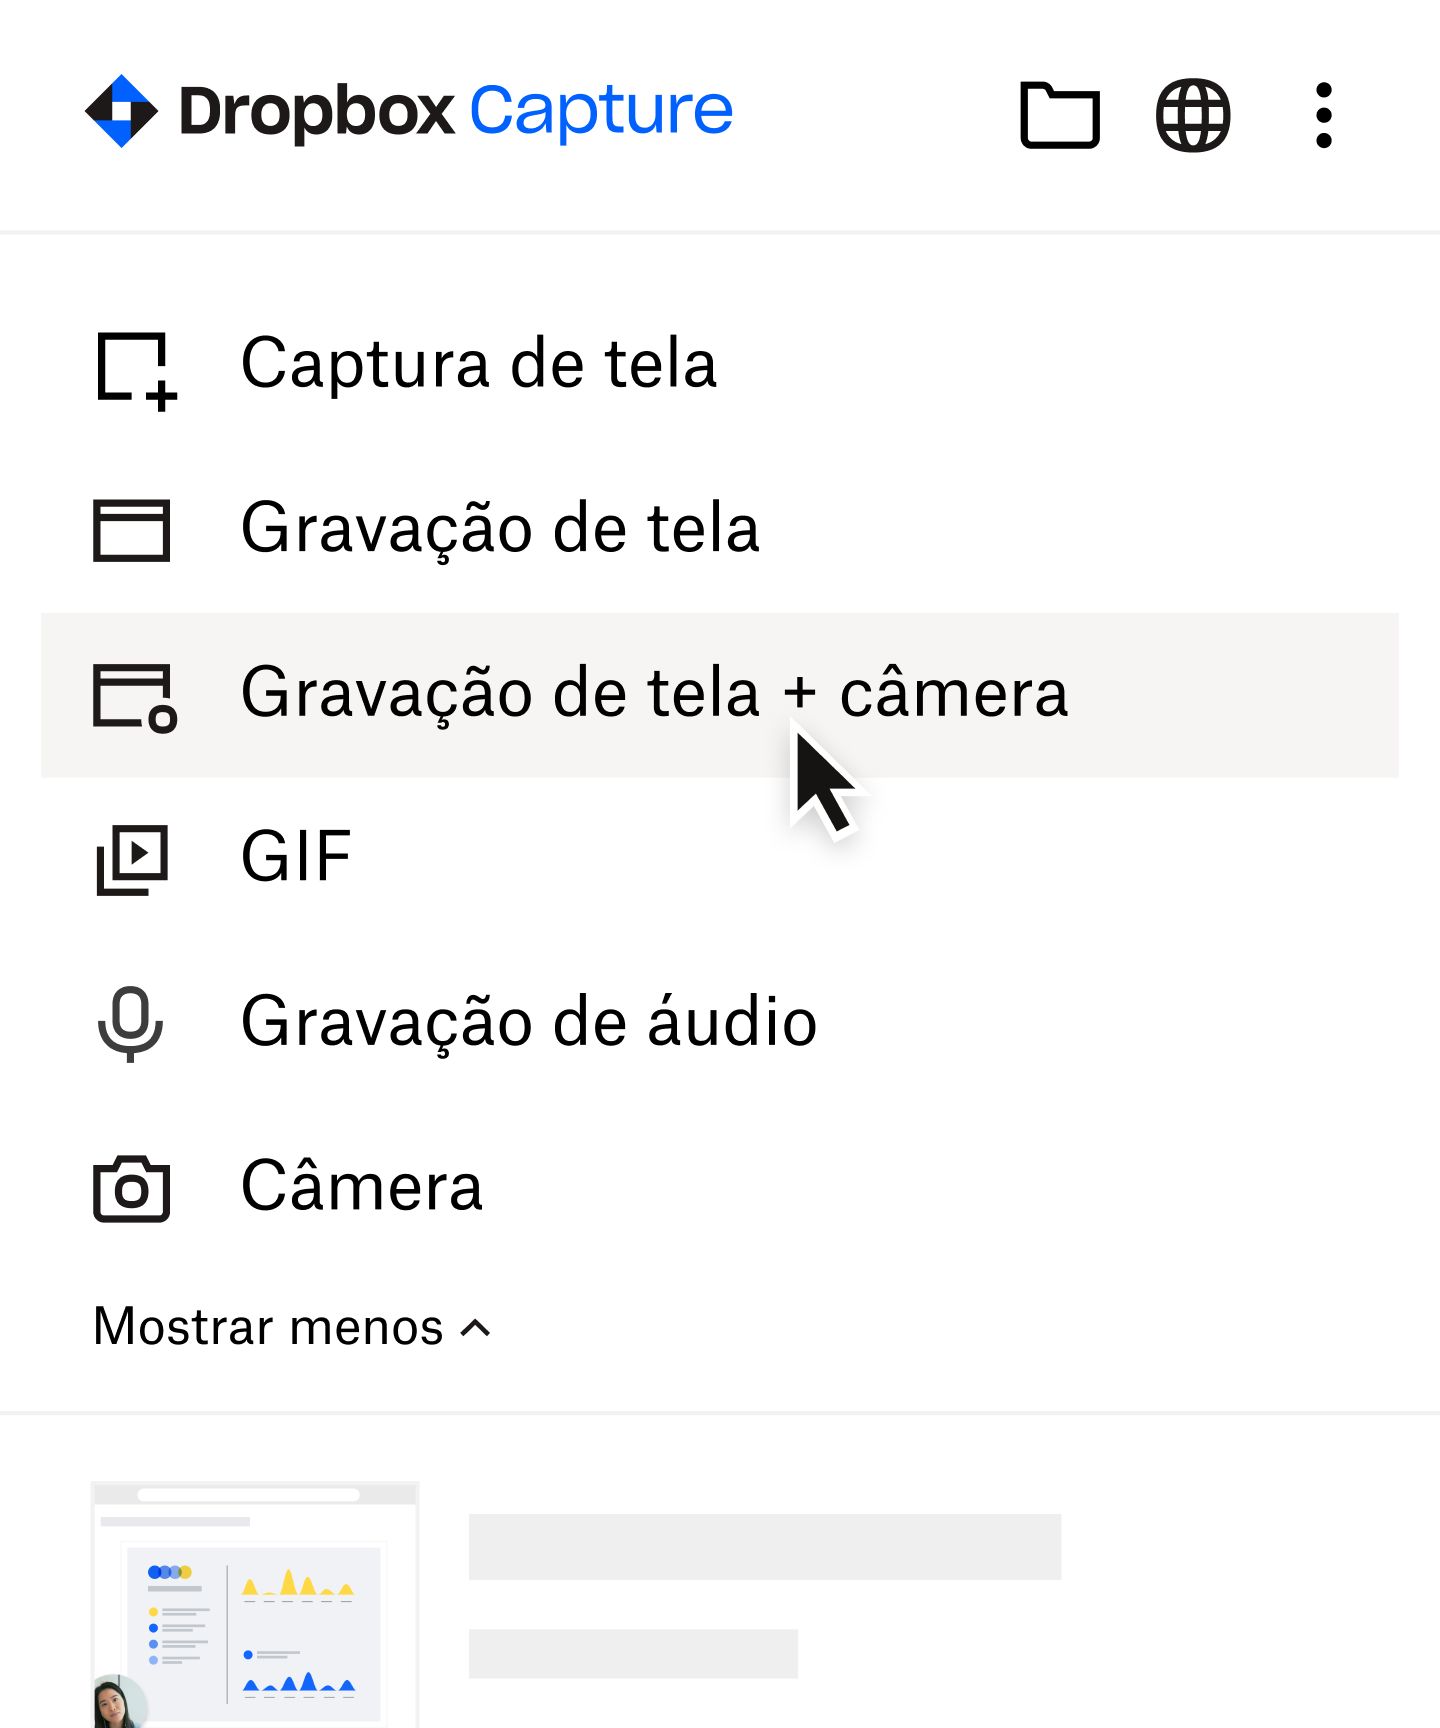 Usuário selecionando “Gravação de tela + câmera” no menu do Capture